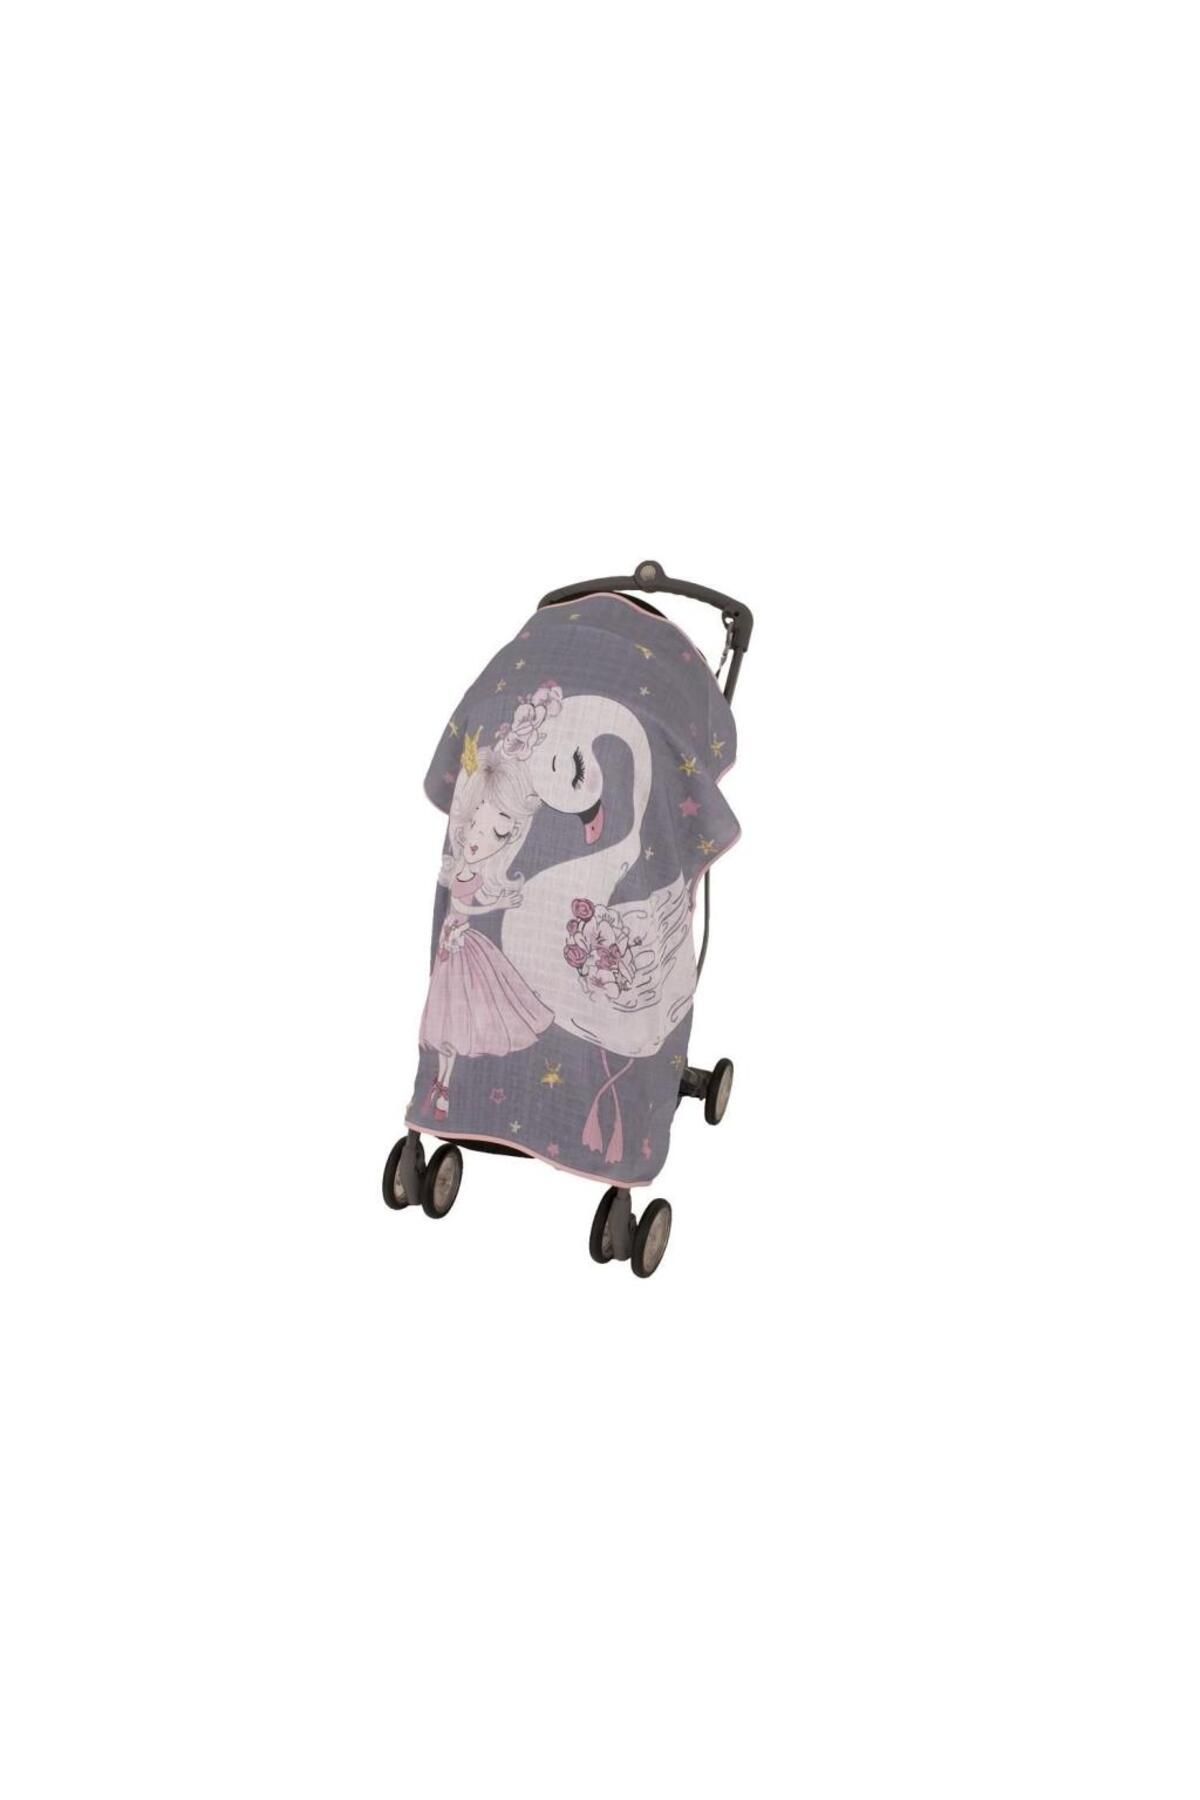 Genel Markalar Nessiworld Sevi Bebe Pano Baskılı Müslin Bebek Arabası Örtüsü Art-315 Kuğu